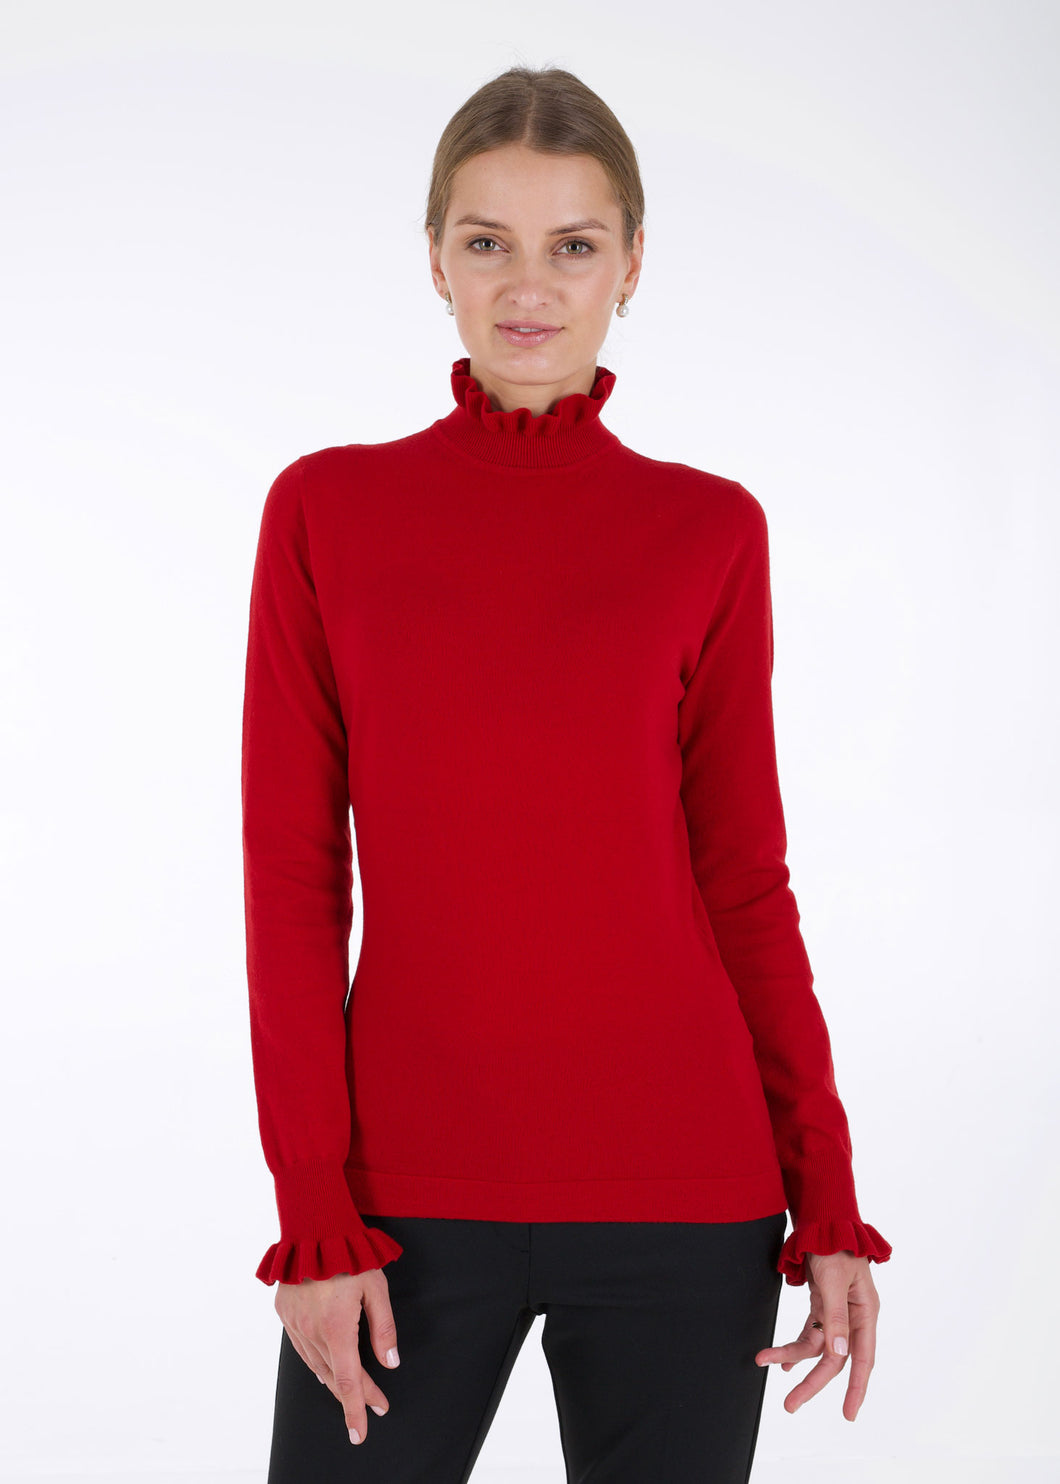 Merino ruffle knit top, red